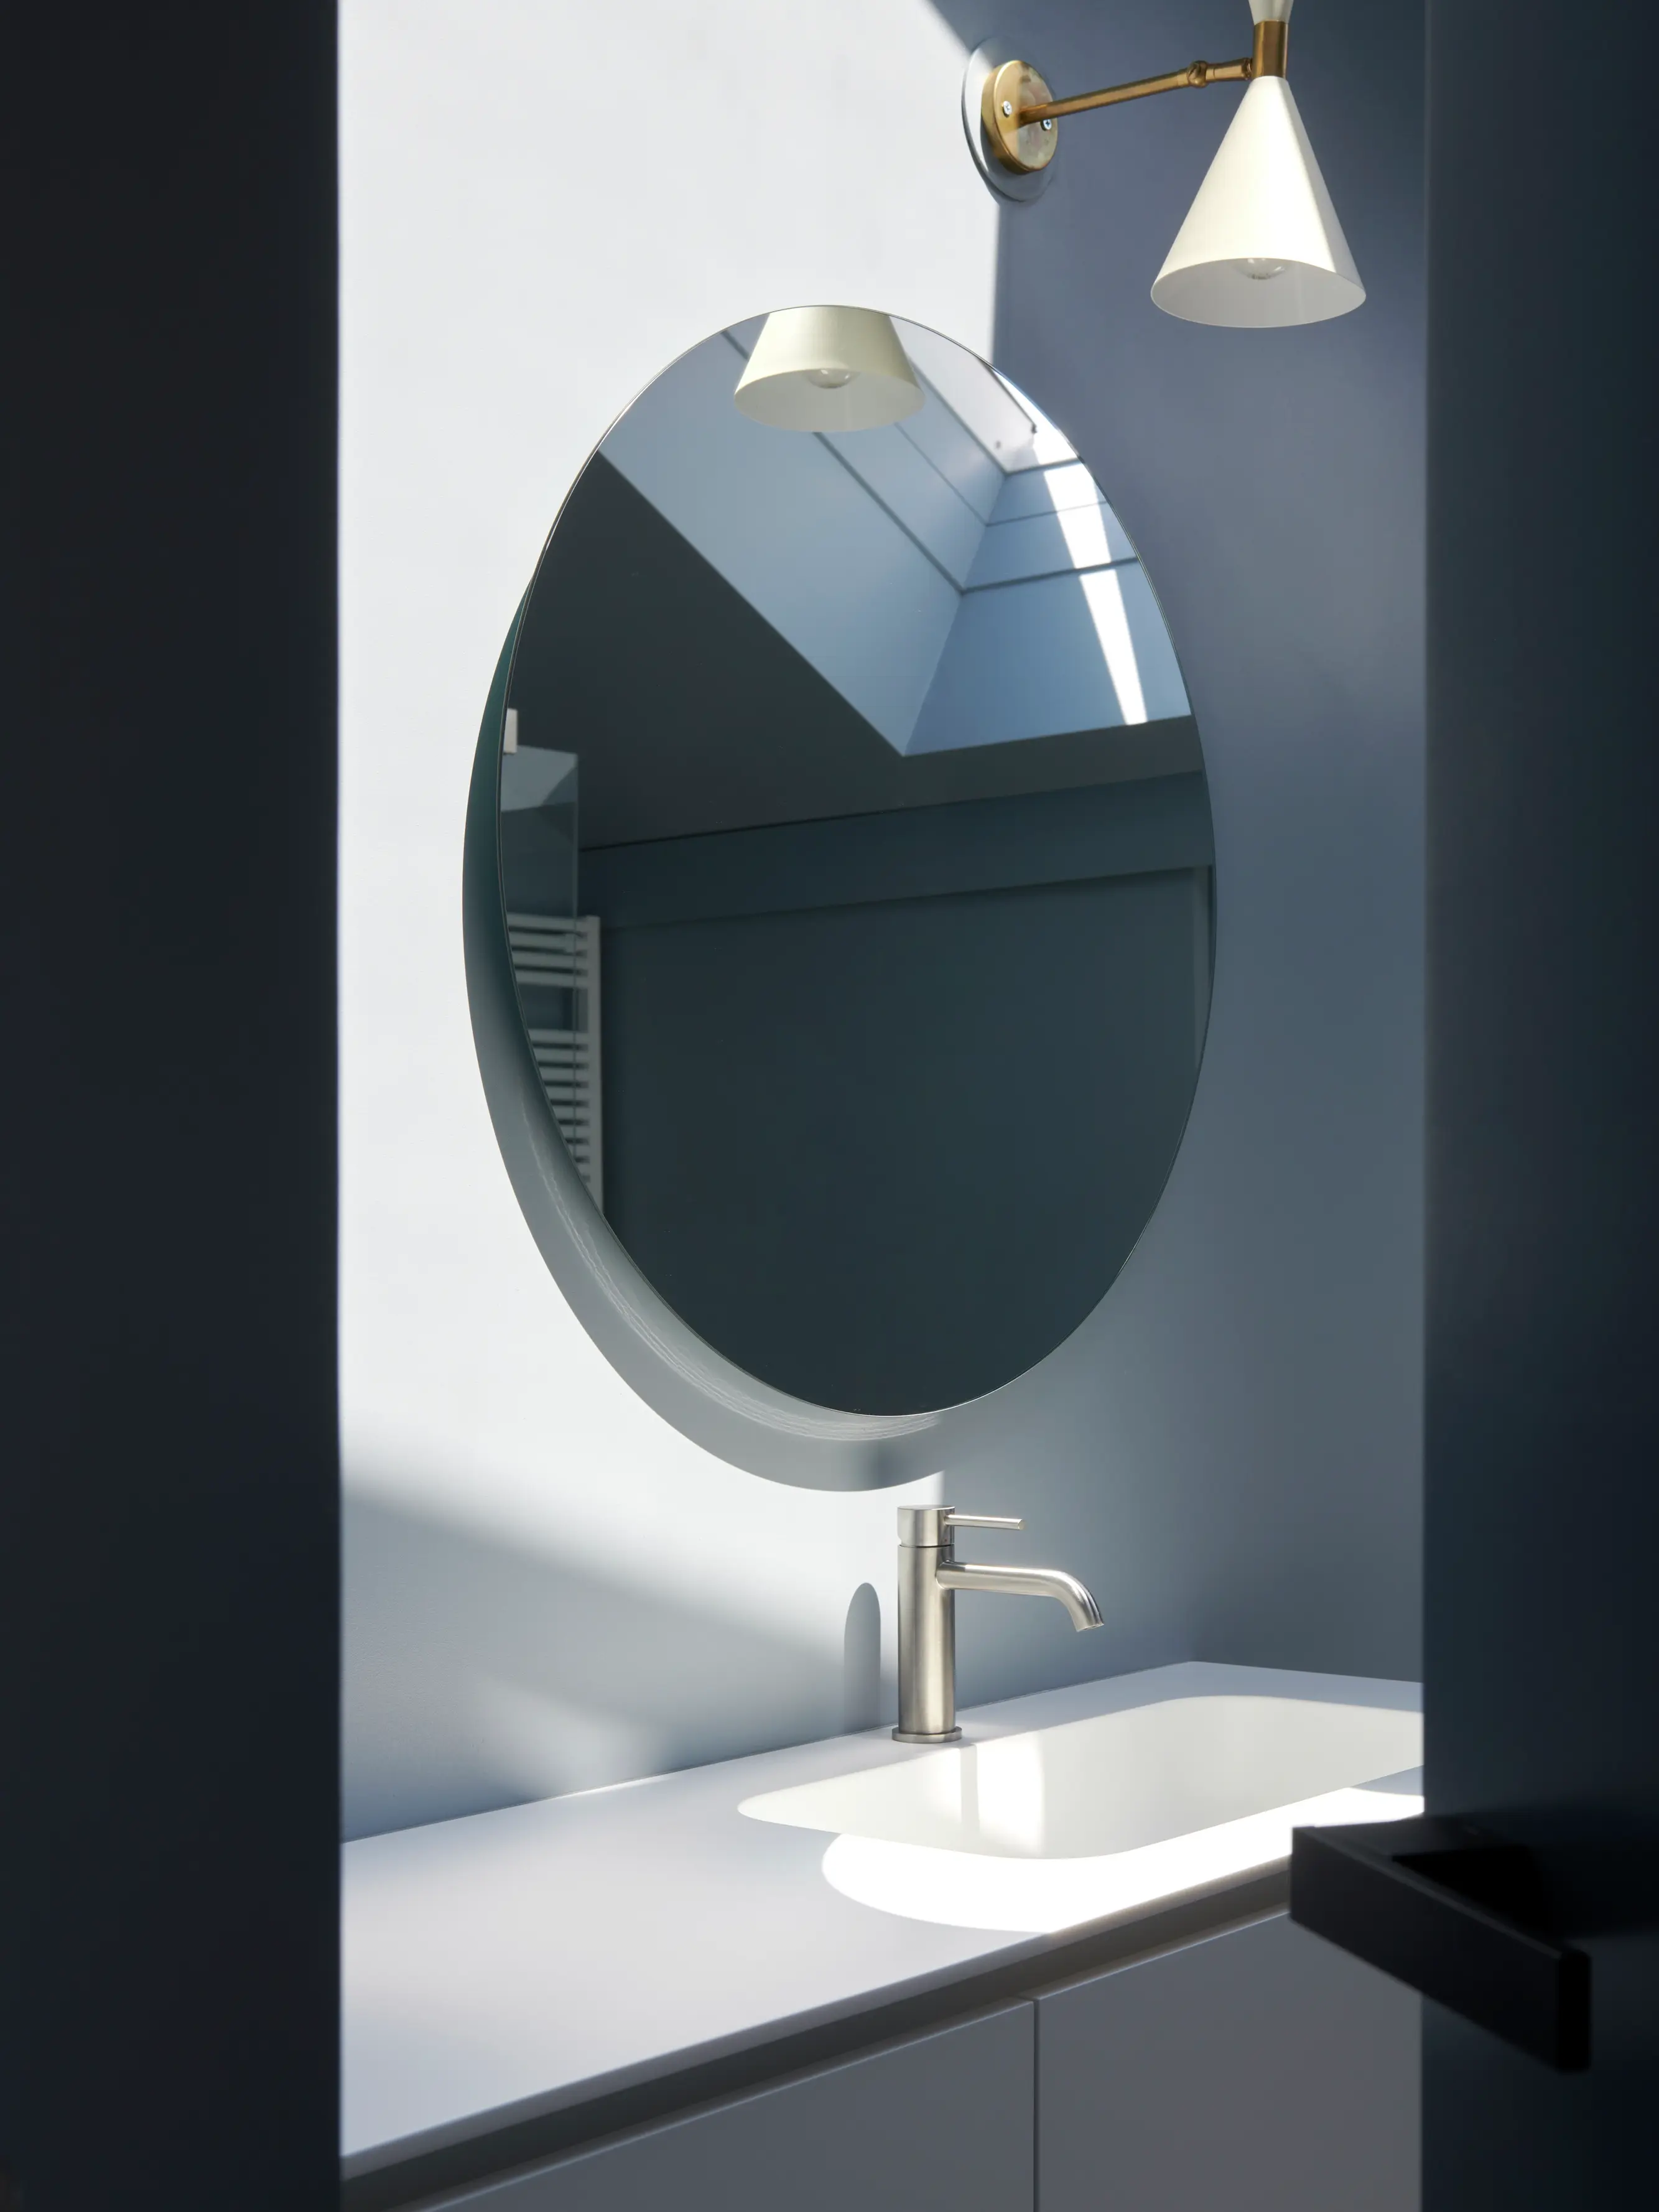 Miroir rond reflétant la lumière naturelle d'une fenêtre de toit VELUX dans une salle de bain moderne.